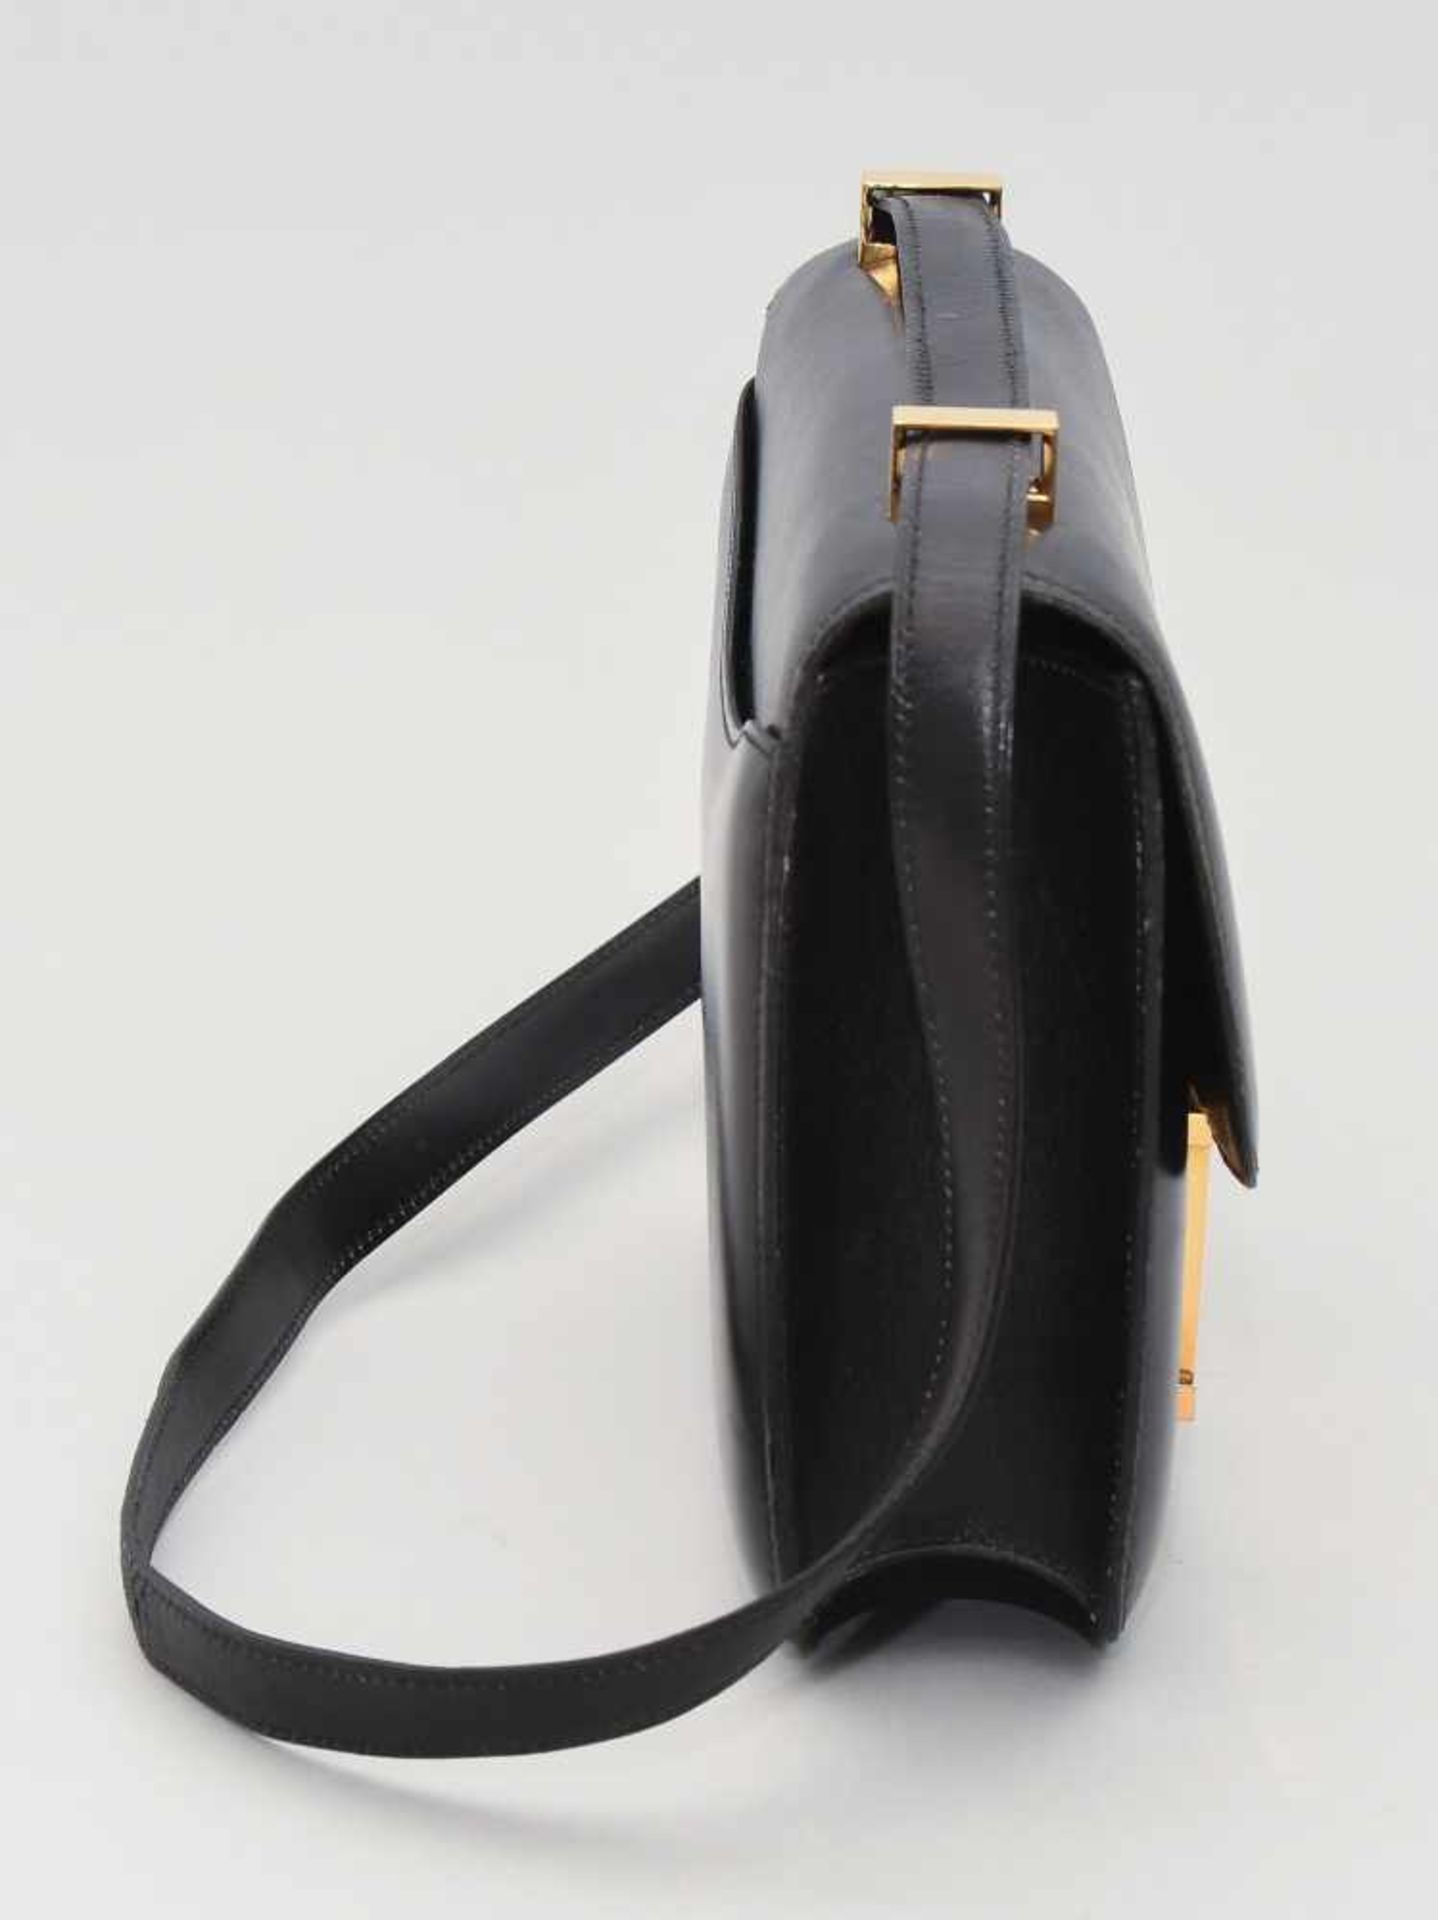 Hermès, Handtasche "Constance" Gemarkt Hermès Paris made in France. Aus schwarzem Leder. "H"- - Bild 6 aus 10